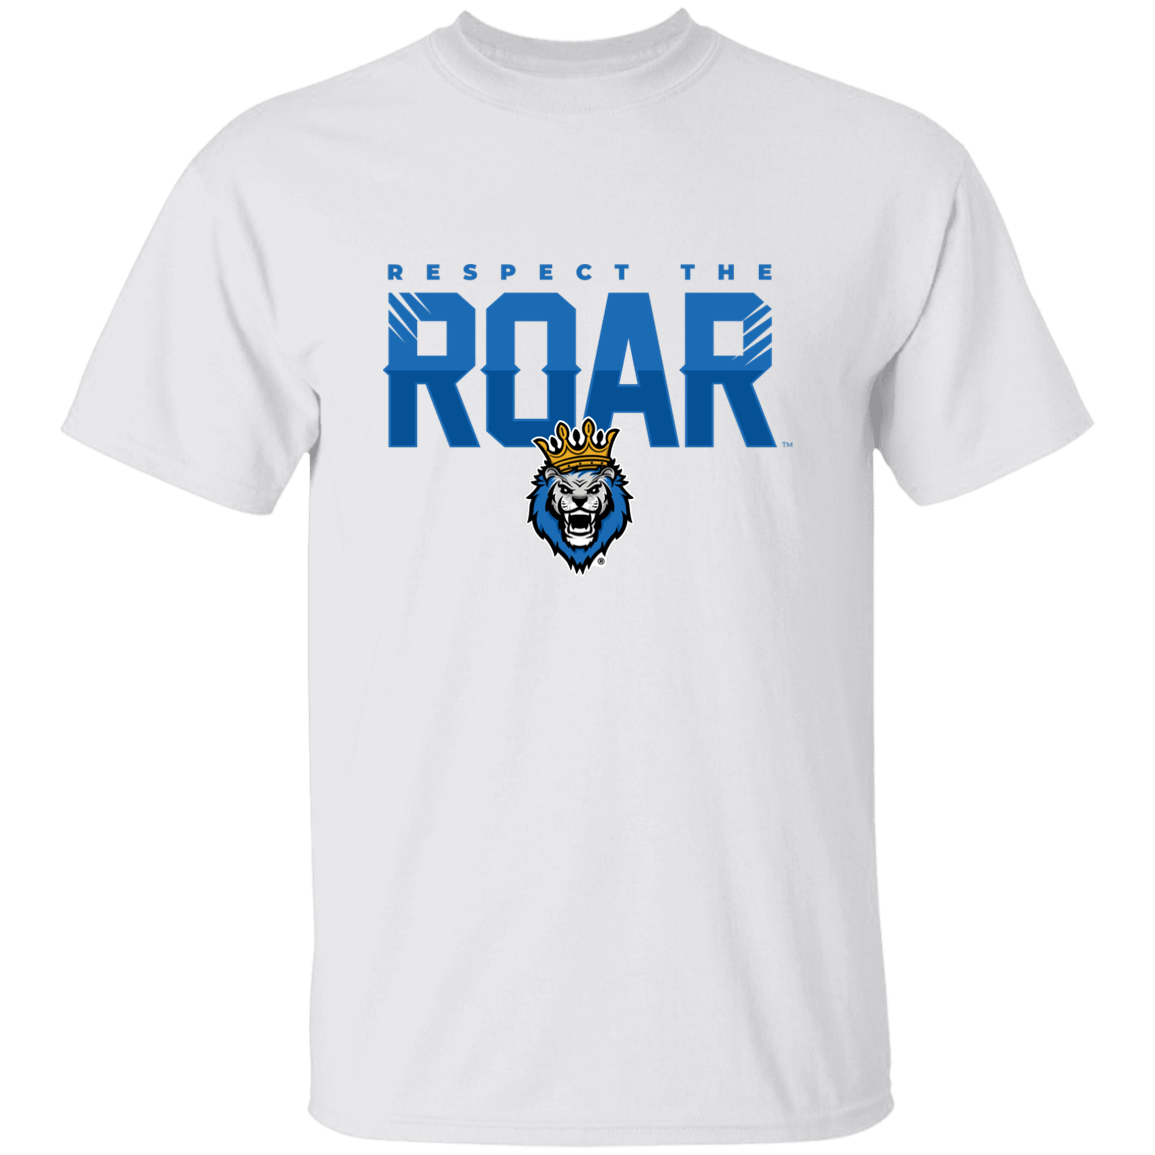 Respect The Roar - G500 5.3 oz. T-Shirt